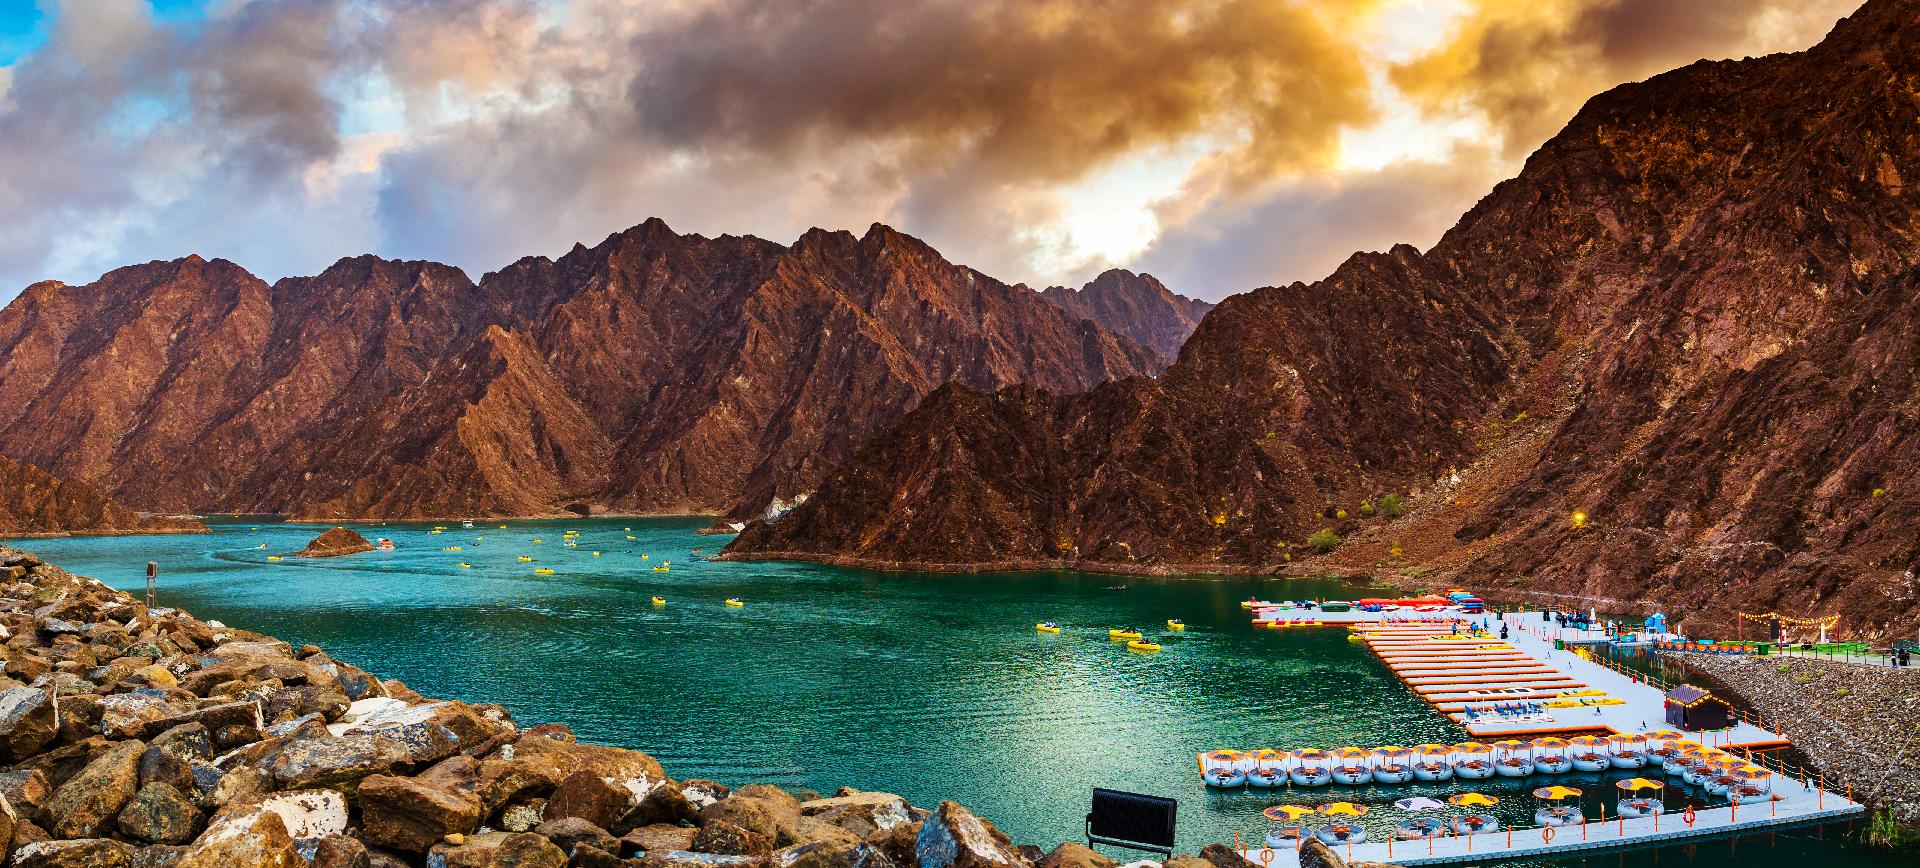 Vista de la represa Hatta o del lago y la montaña Hajar en el Emirato de Dubai